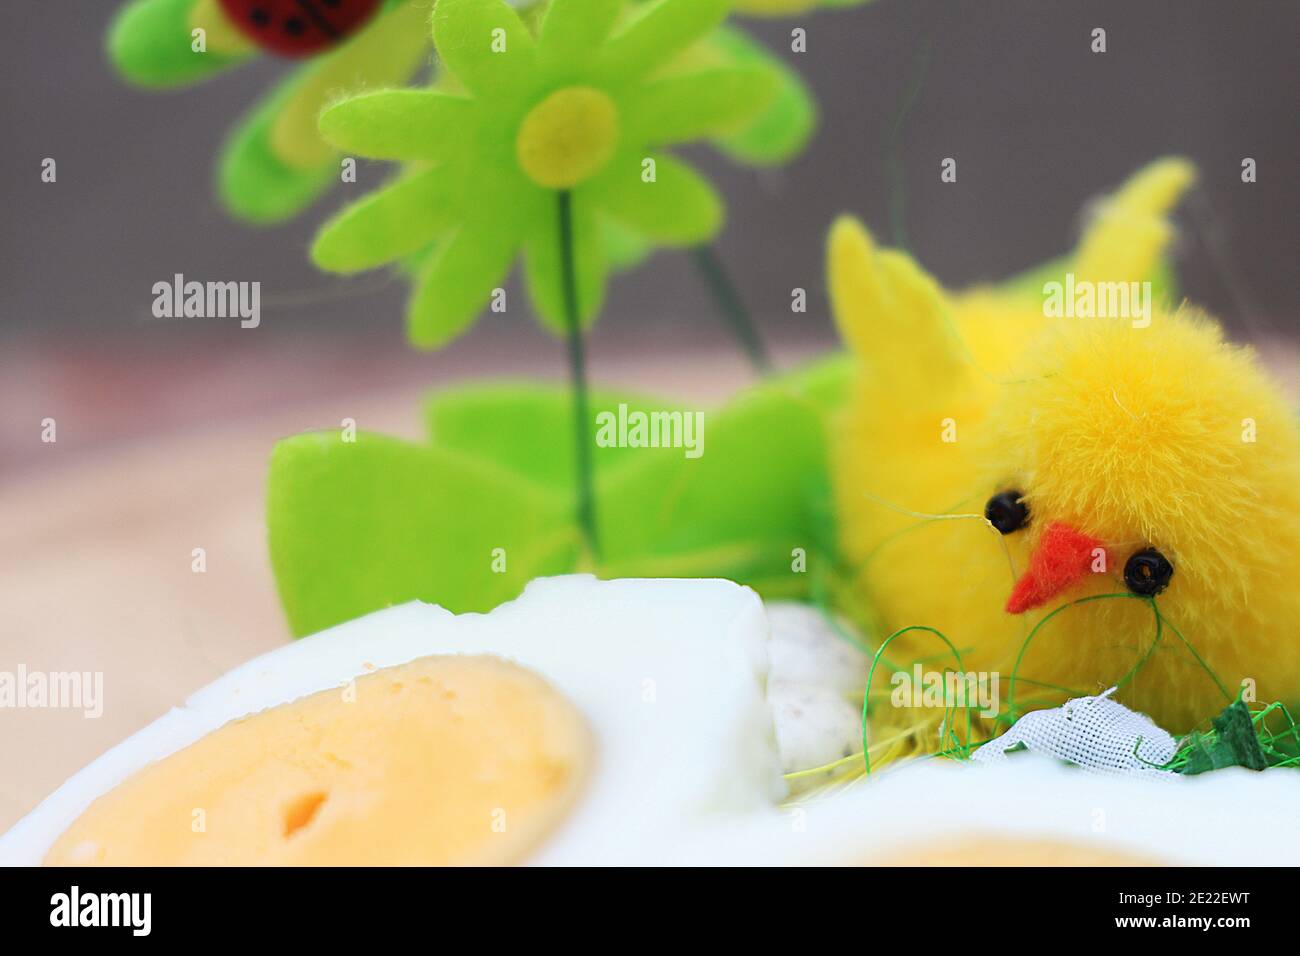 Pulcino di Pasqua e uova di pollo bollite, composizione decorativa per congratulazioni a Pasqua Foto Stock